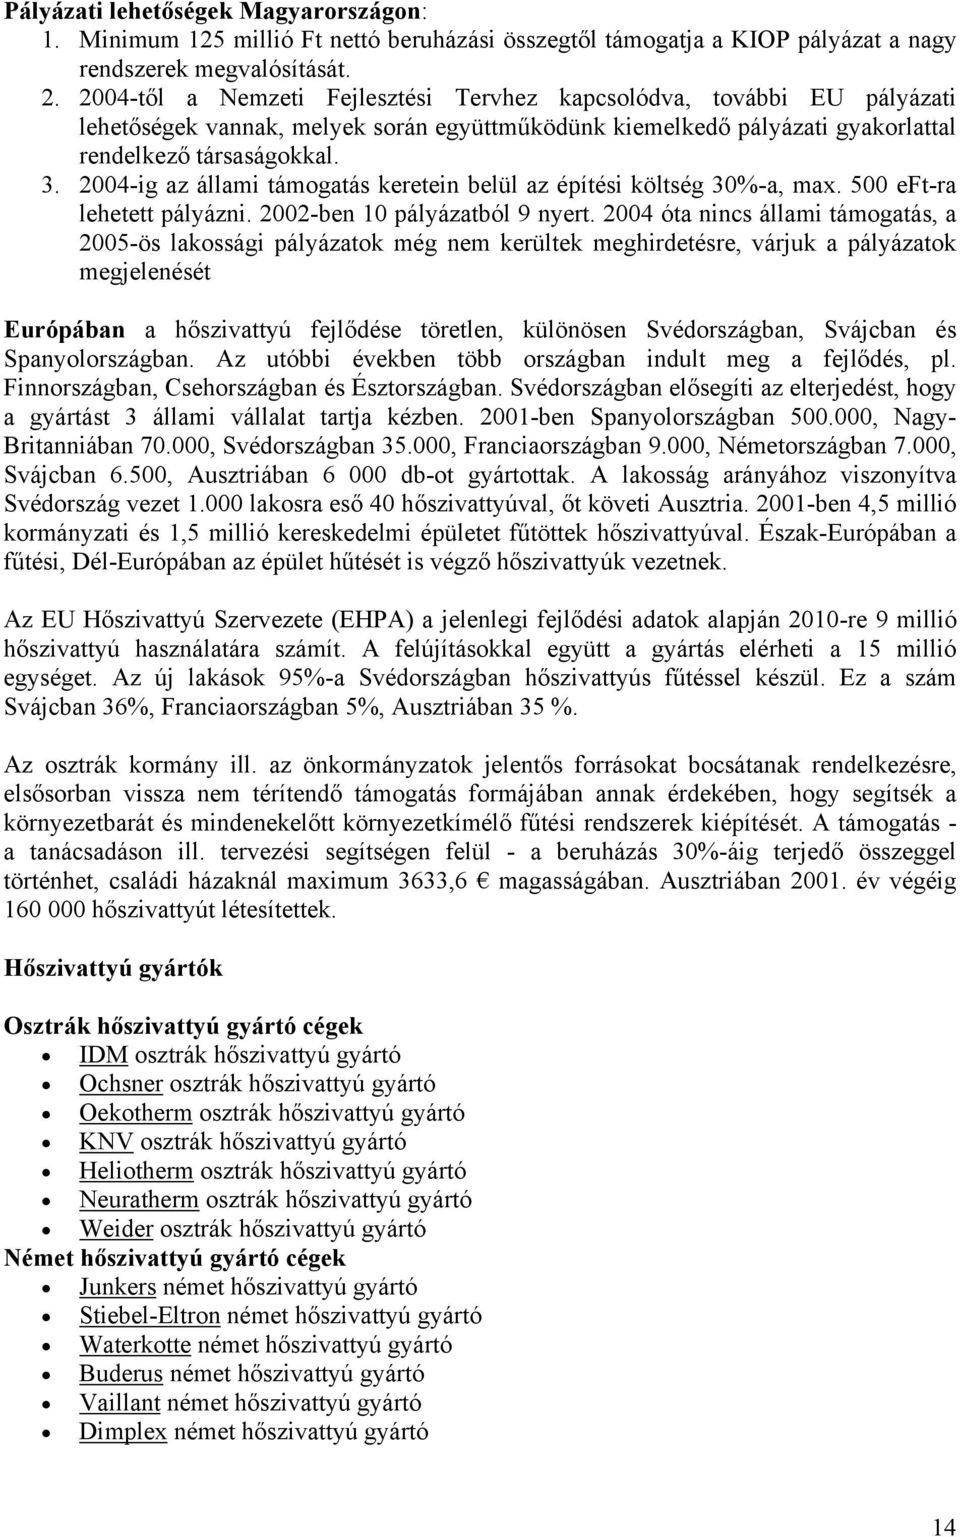 Hőszivattyúk alkalmazási lehetőségeinek elemzése magyarországi családi  házaknál - PDF Free Download